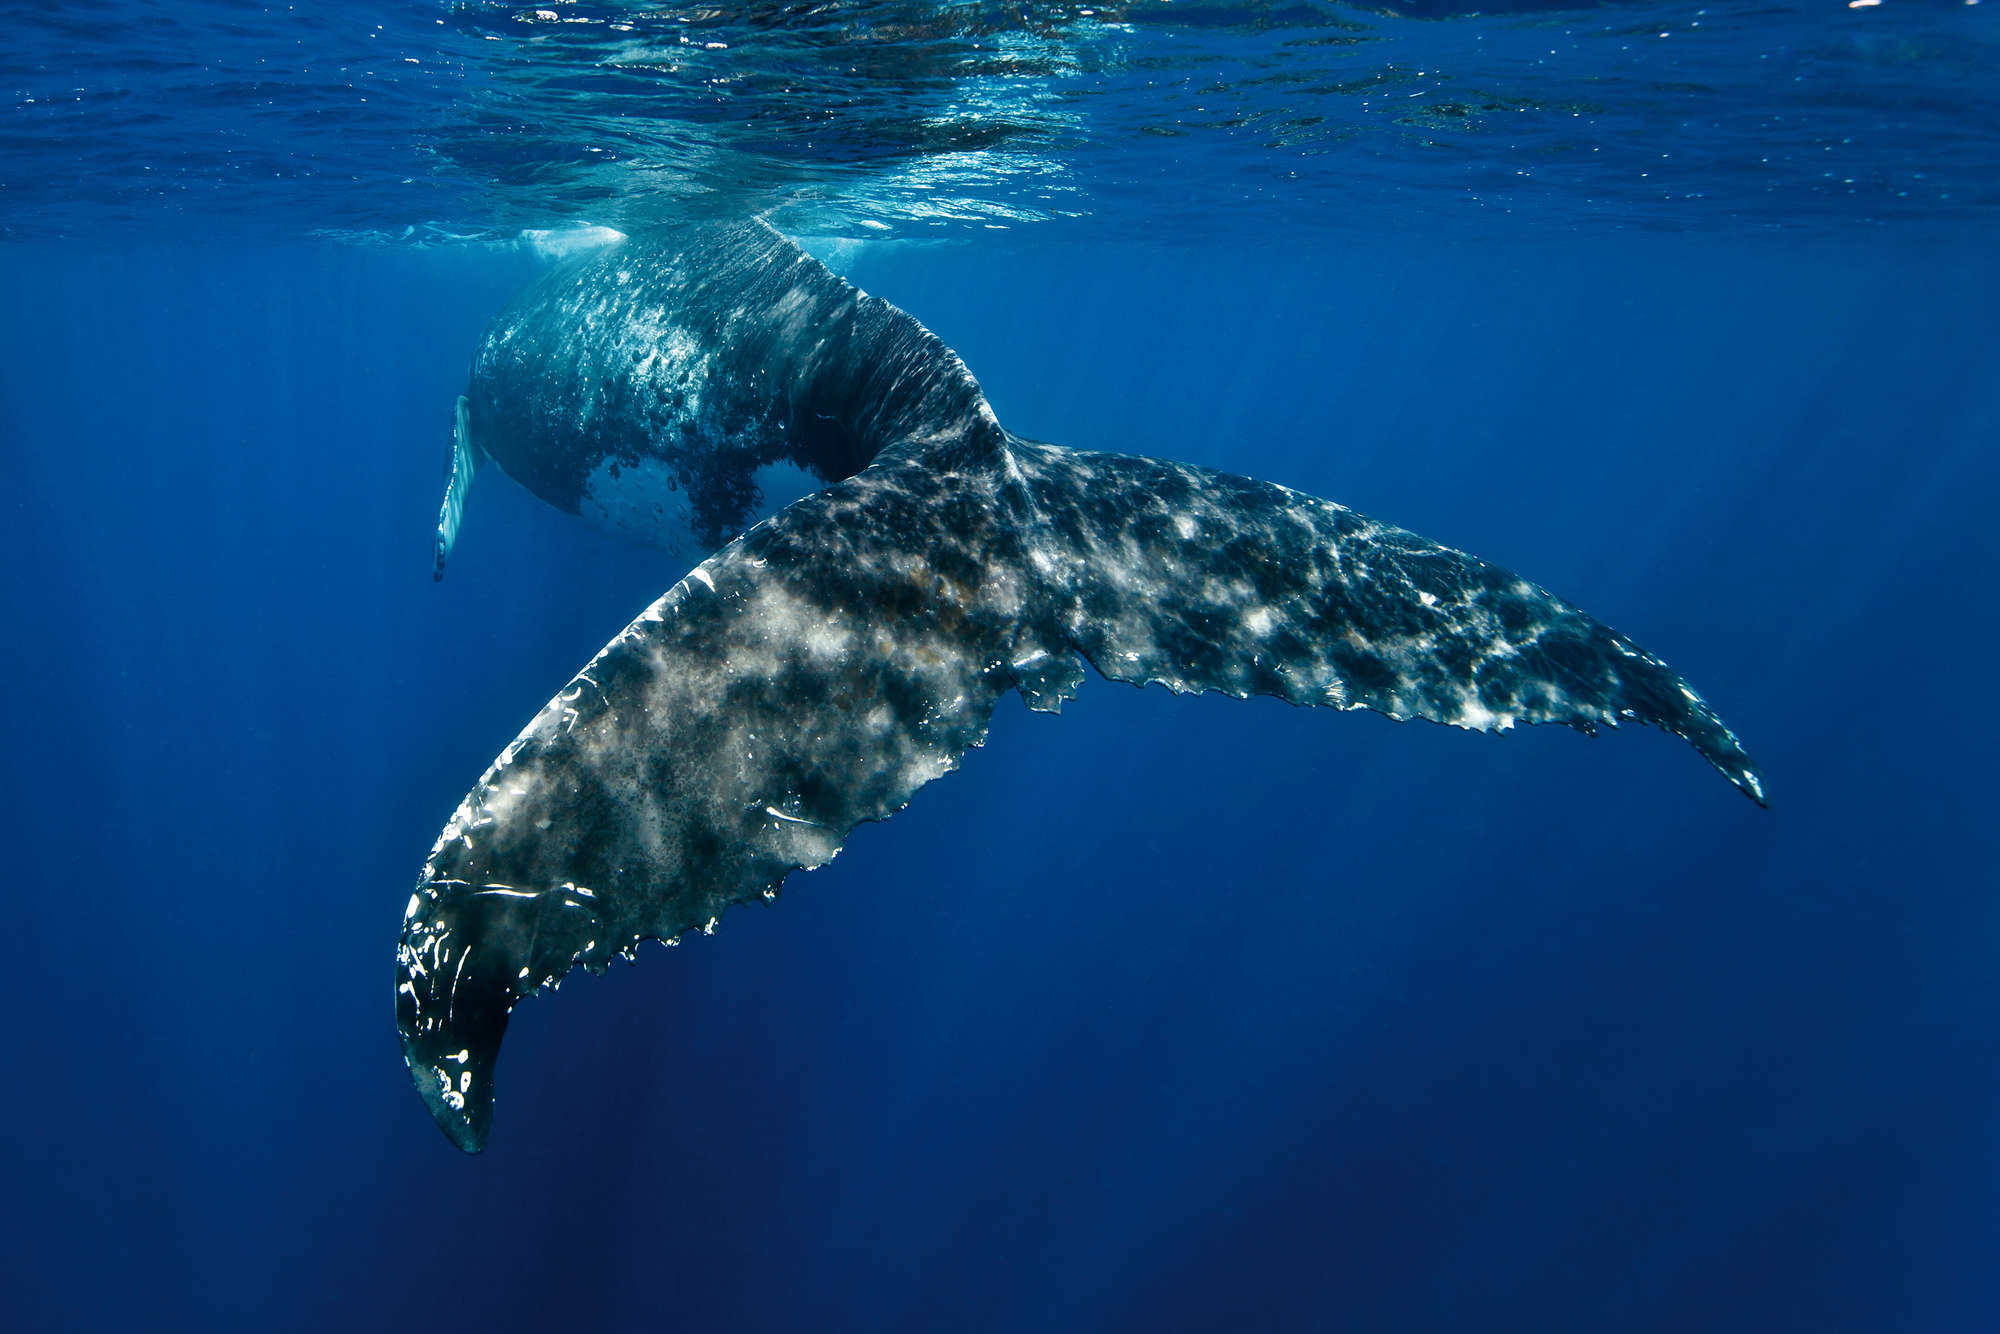             Marinebehang met walvisvin op parelmoer glad vlies
        